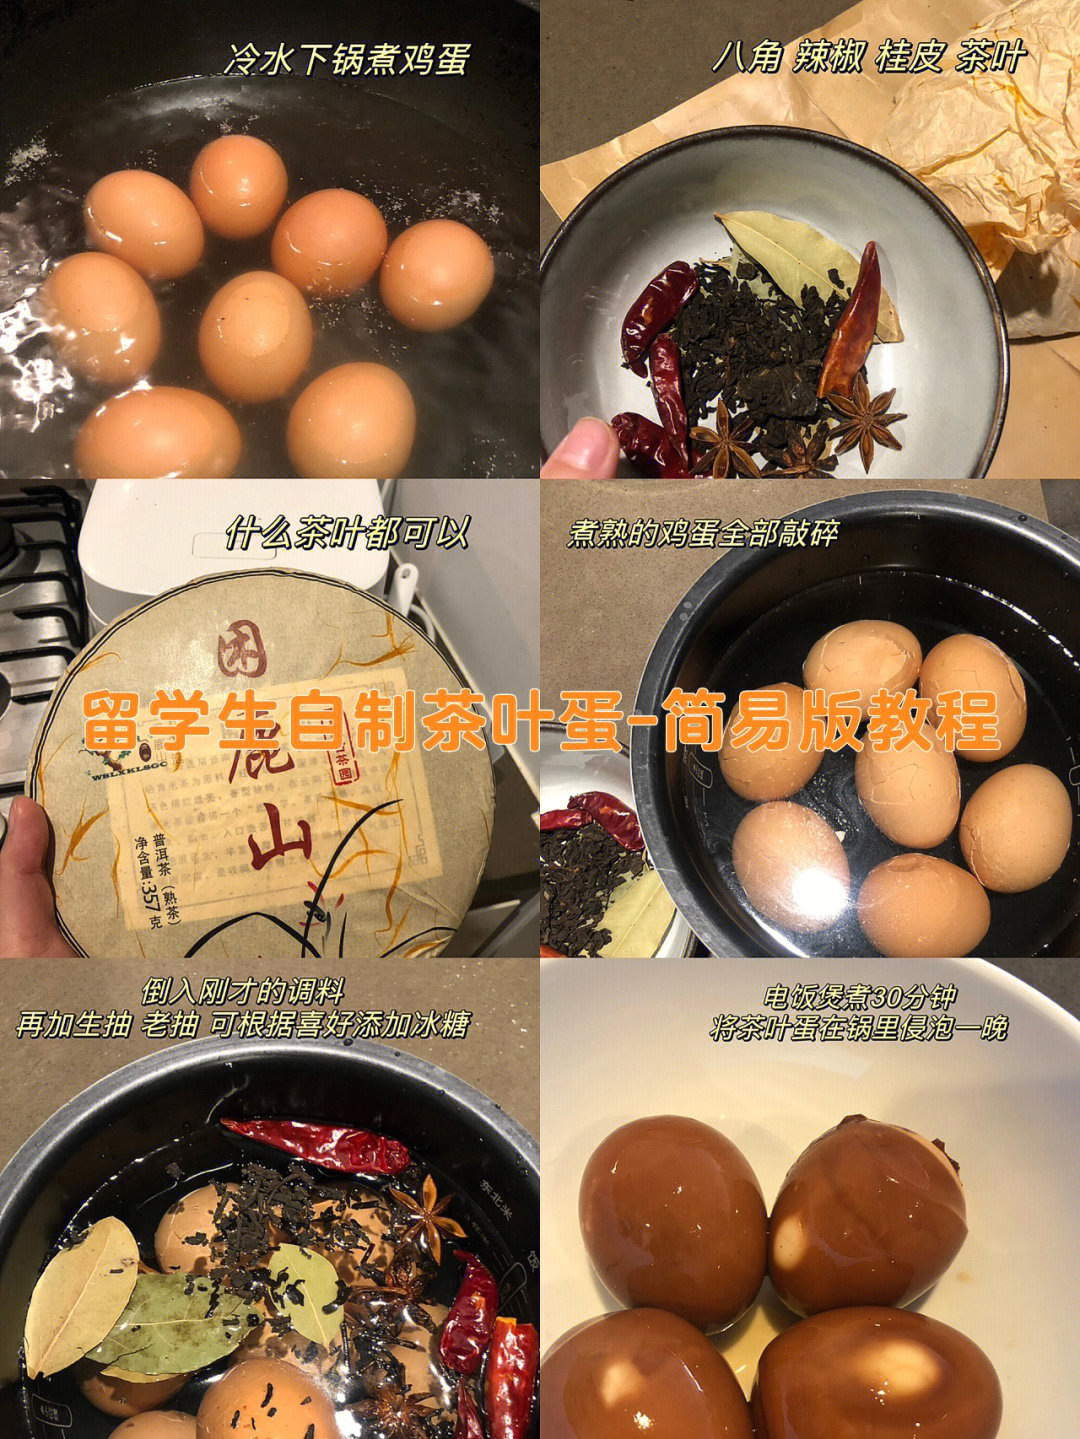 茶叶蛋的做法及配料图片